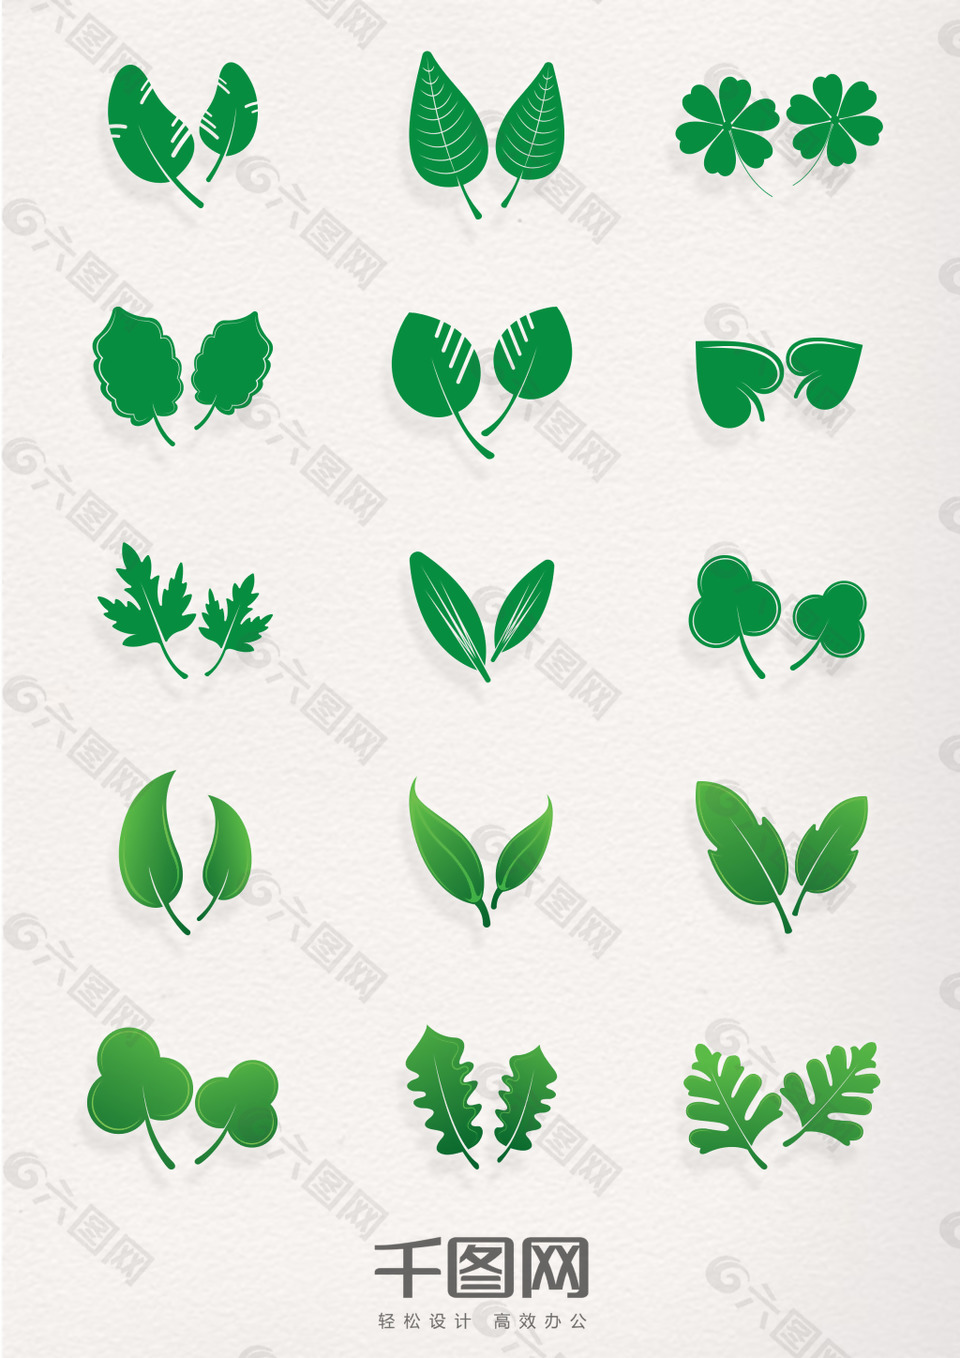 多种绿色叶子元素图标